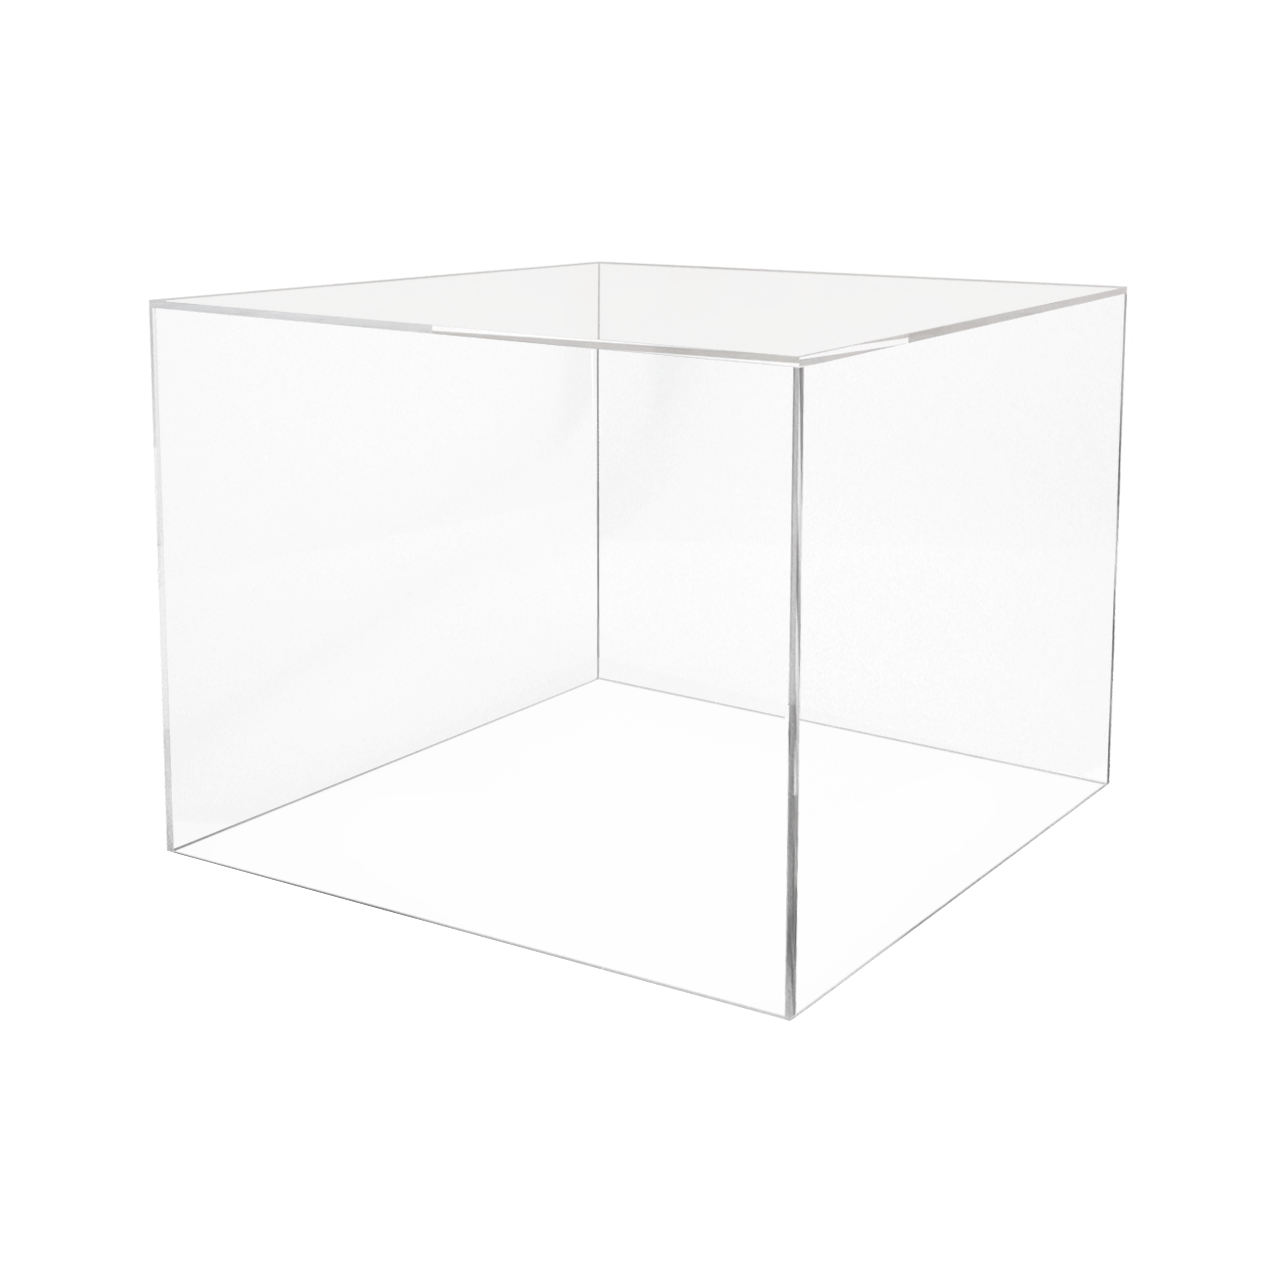 Acrylic 5 Sided Box - 8H x 8W x 12L - Plexiglass, Lucite